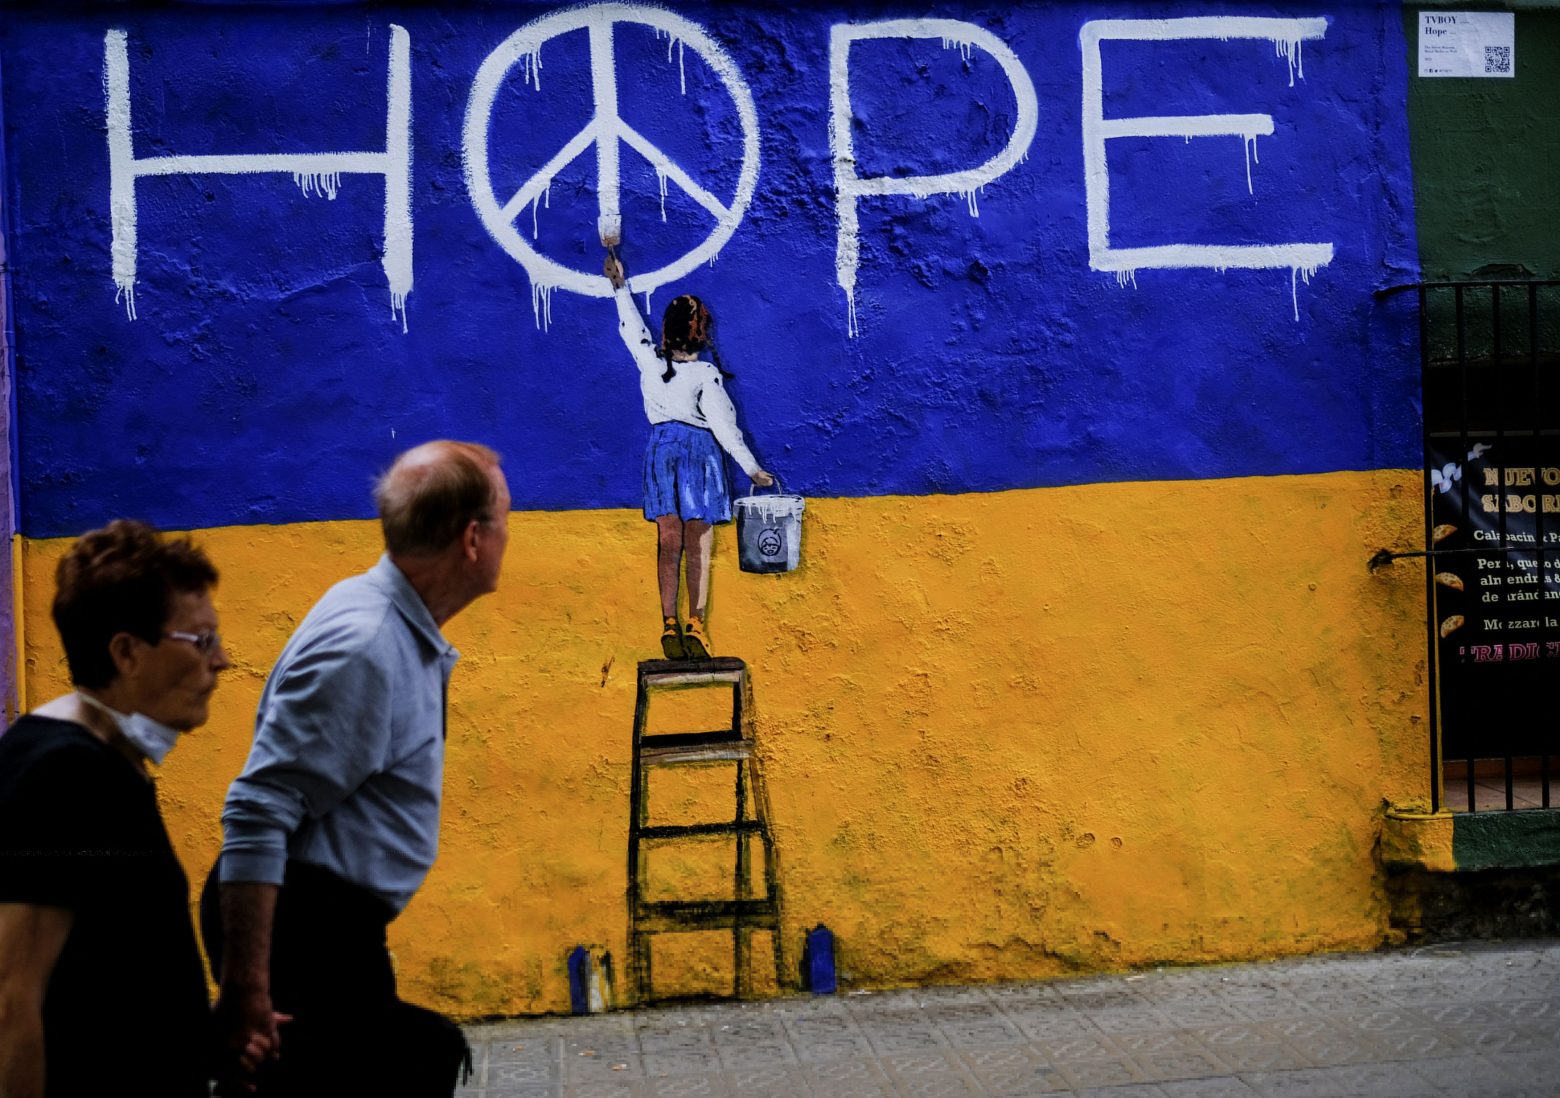 Italia: Presenta al Segretario Generale dell’Onu il piano di pace per l’Ucraina